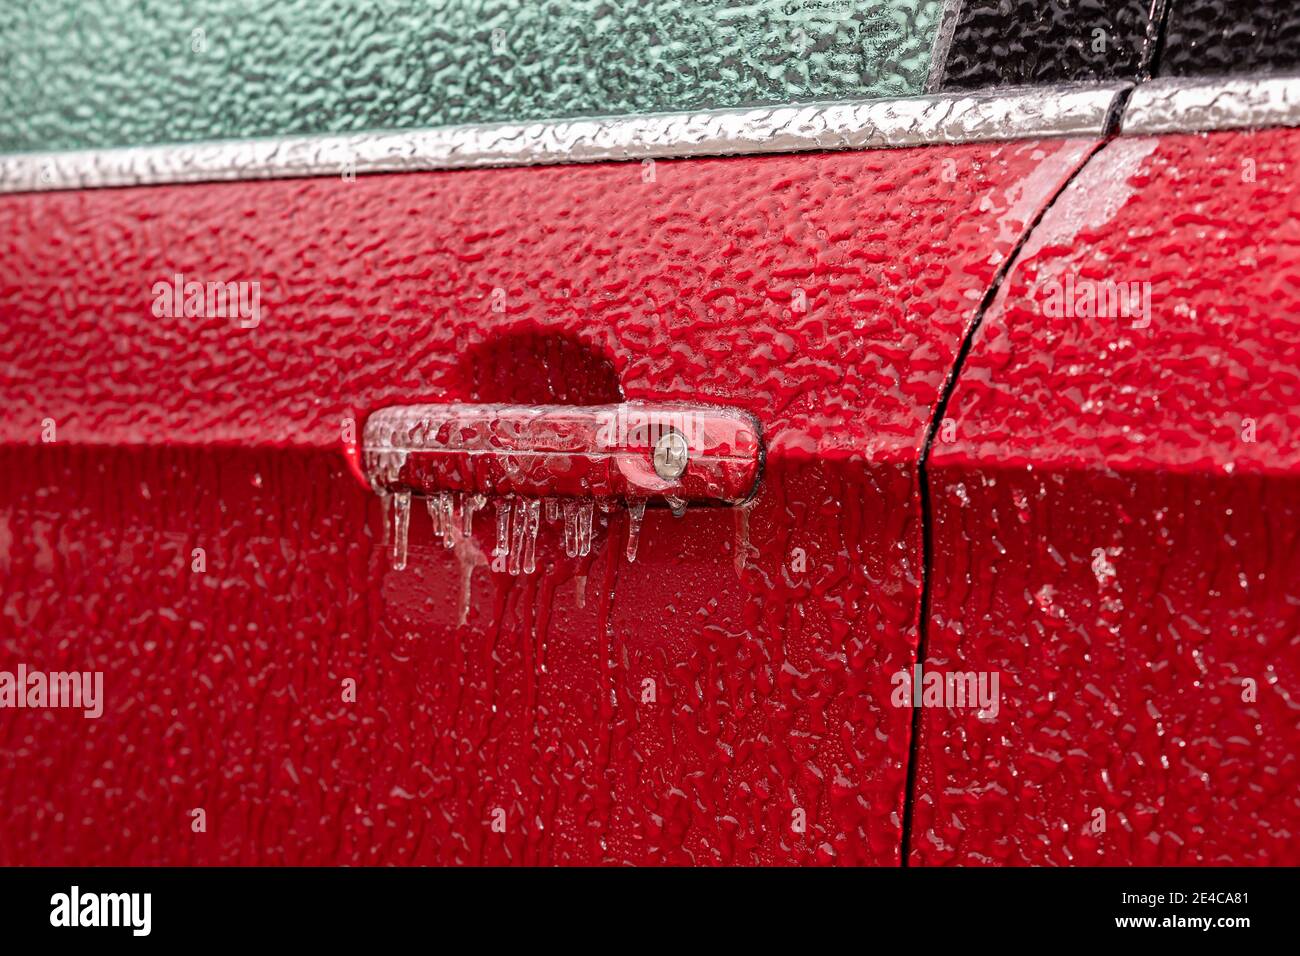 Chiusura della maniglia della porta dell'auto e della serratura ricoperta di ghiaccio durante la tempesta invernale. Concetto di preparazione e sicurezza alla guida invernale Foto Stock